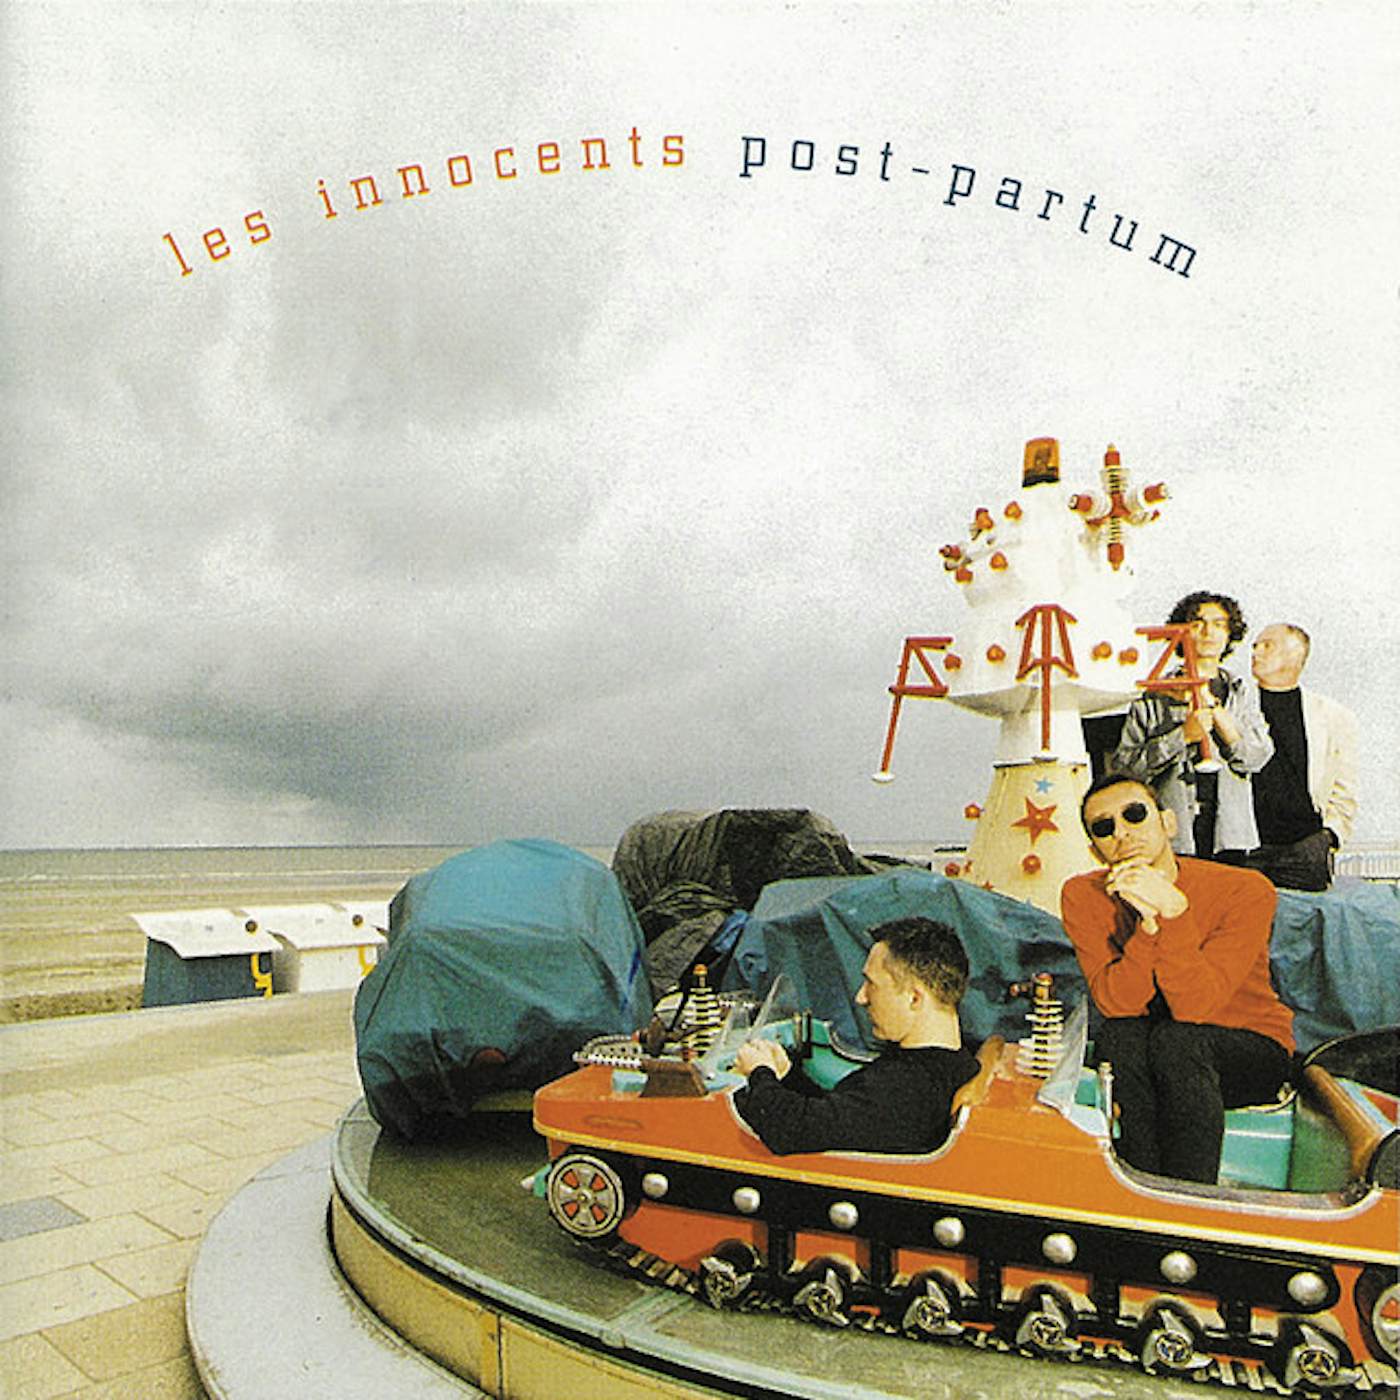 Les Innocents Post-Partum Vinyl Record